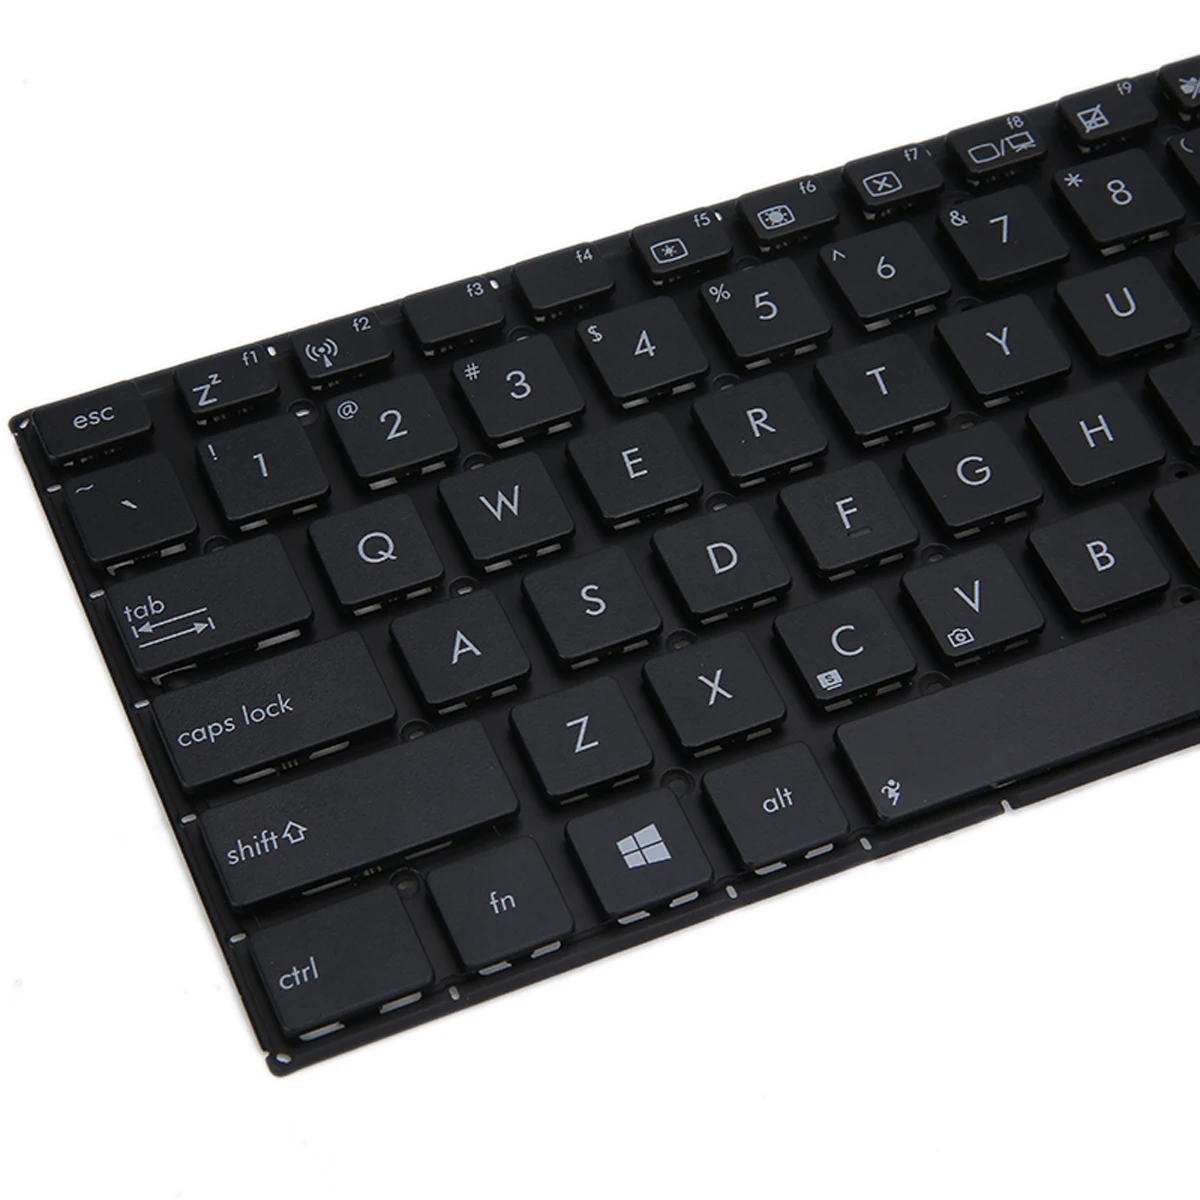 1 шт. Компьютерные клавиатуры Черный для ASUS x551 X551M X551MA X551MAV F550 F550V X551C X551CA английская клавиатура для ноутбука США